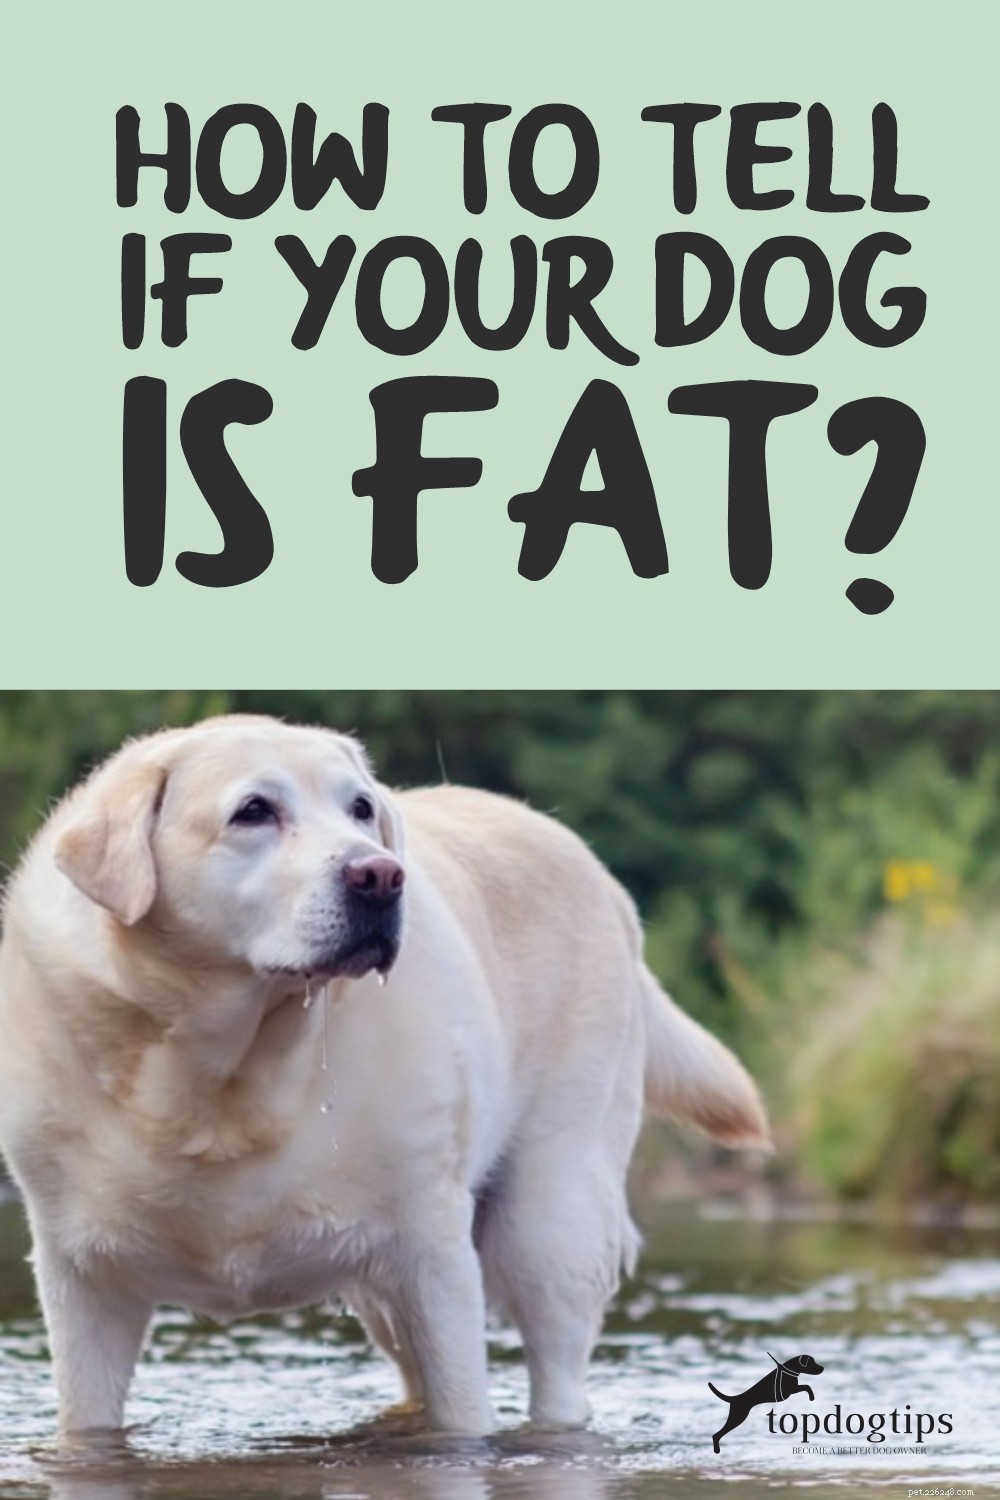 개가 뚱뚱한지 어떻게 알 수 있나요?